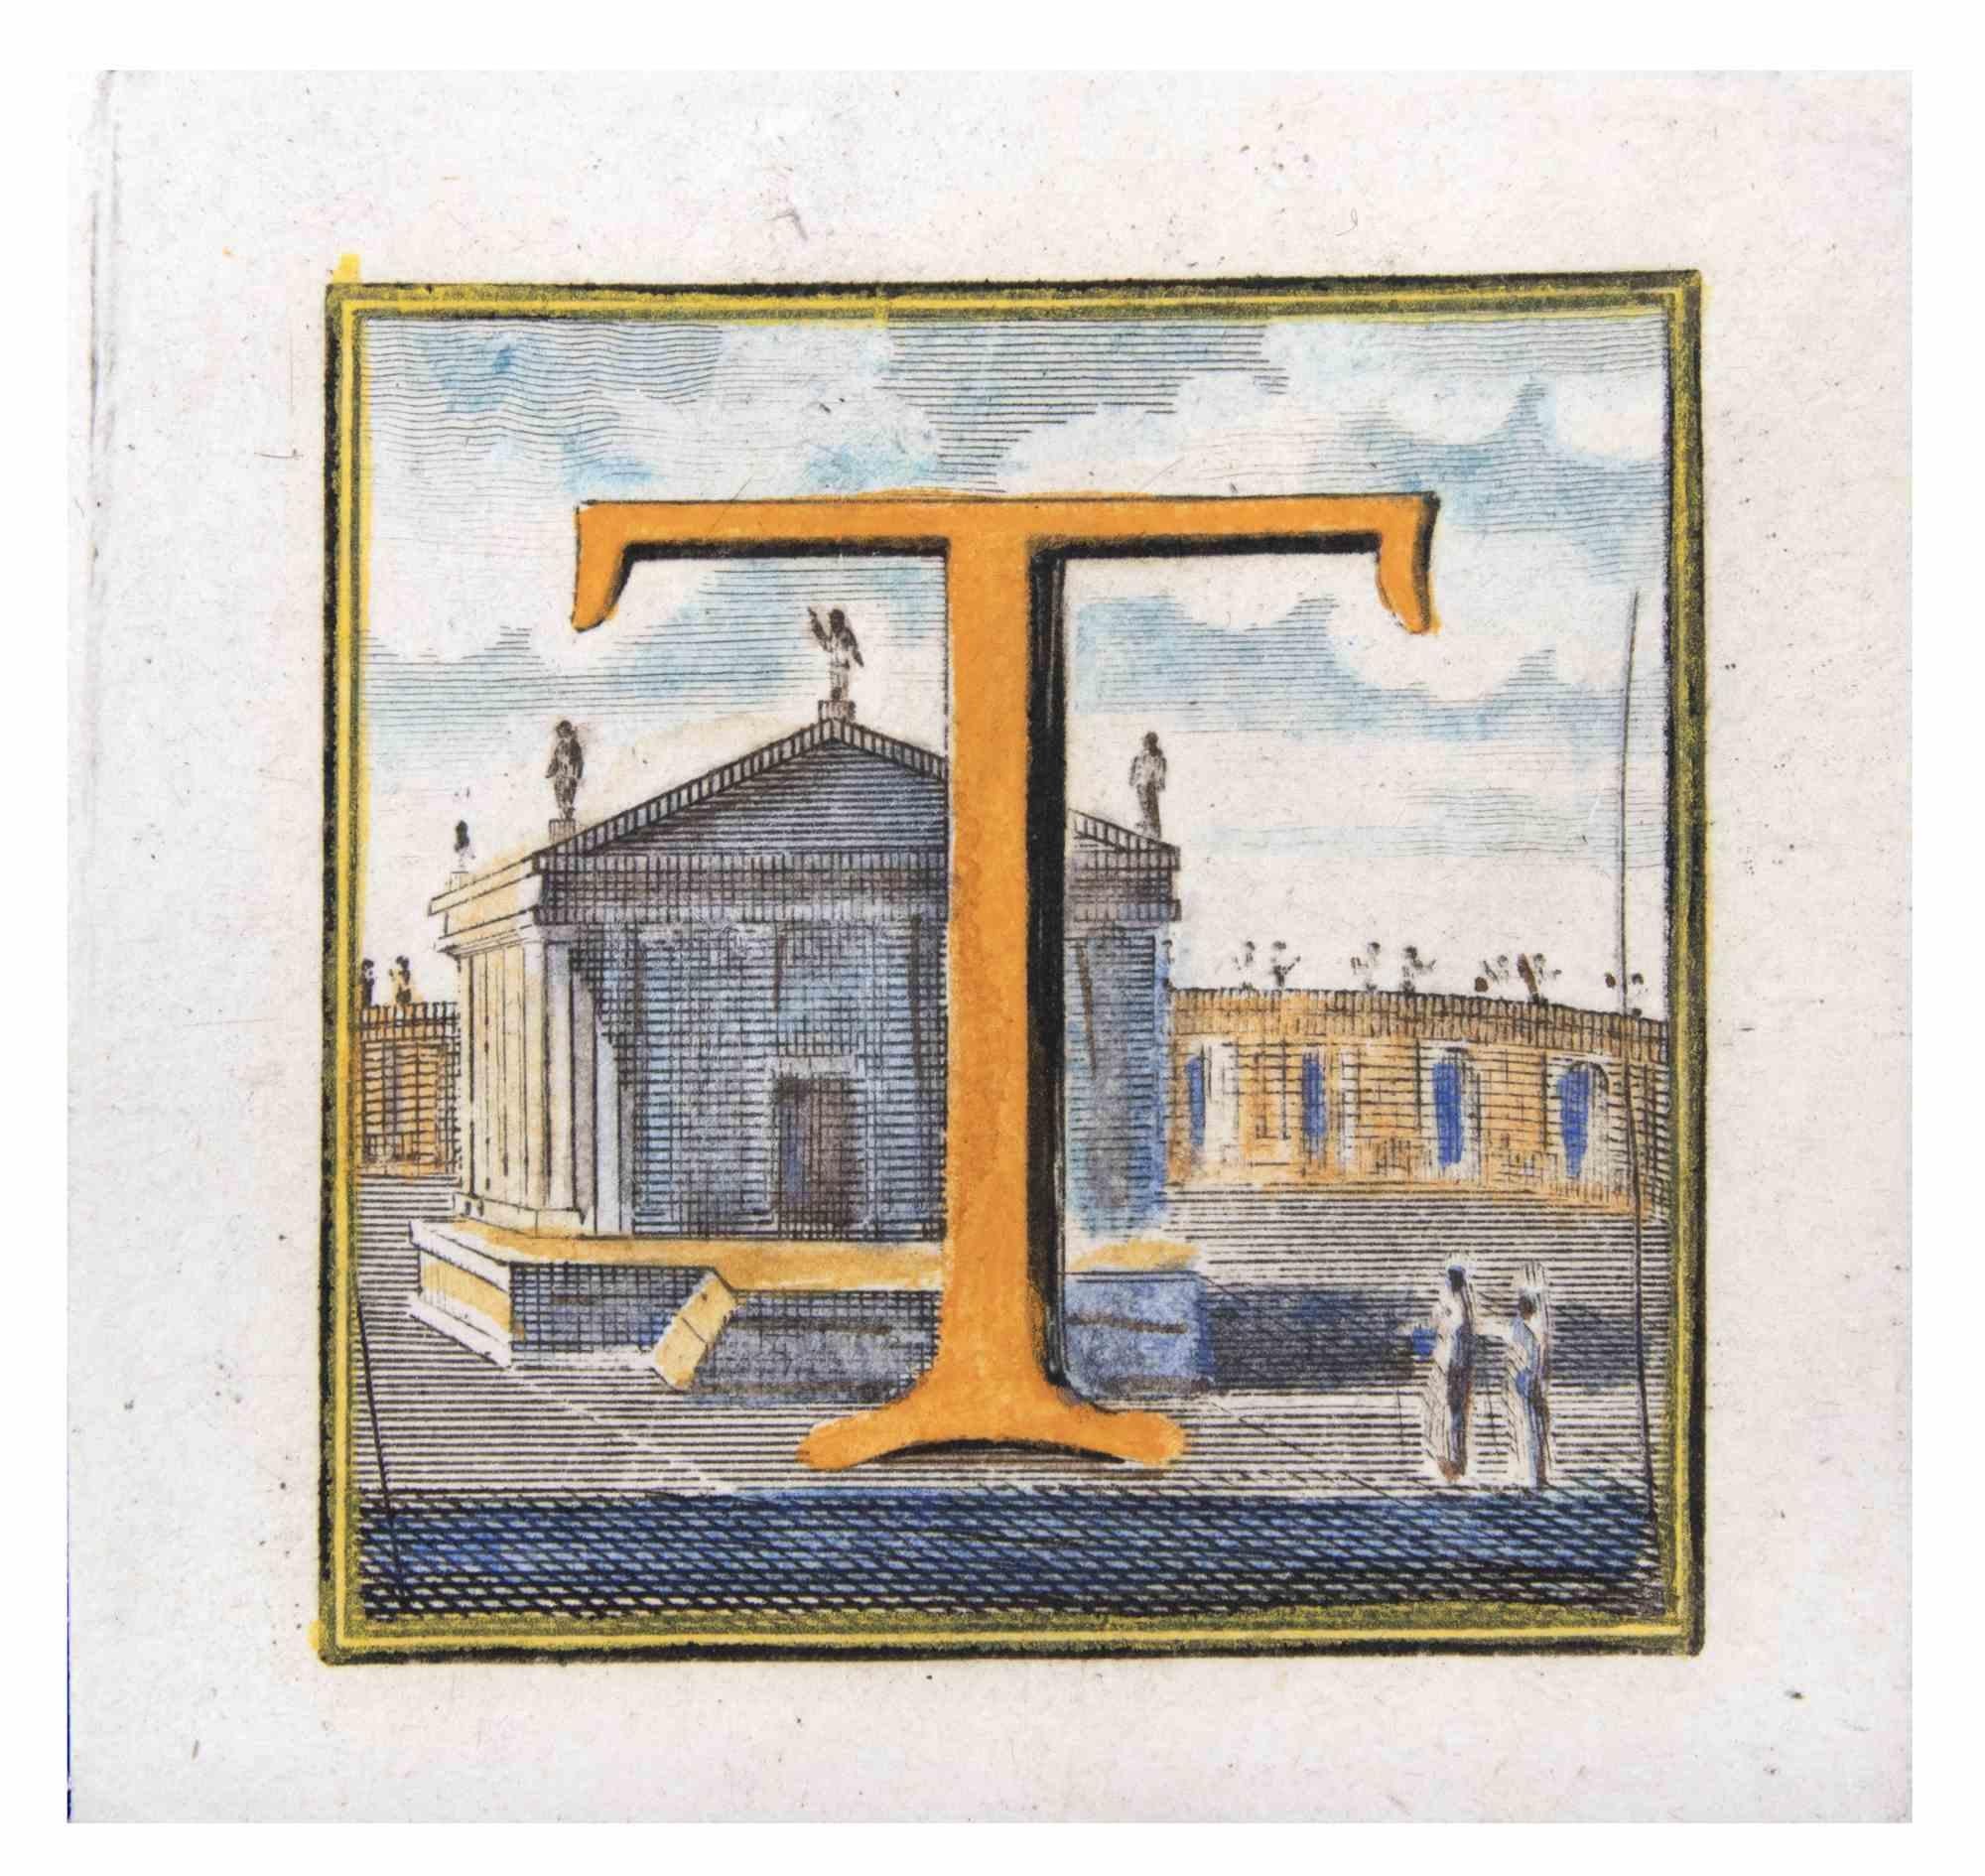 La lettre AT&T est une gravure réalisée par Luigi Vanvitelli, artiste du XVIIIe siècle.

Bonnes conditions.

La gravure appartient à la suite d'estampes "Antiquités d'Herculanum exposées" (titre original : "Le Antichità di Ercolano Esposte"), un